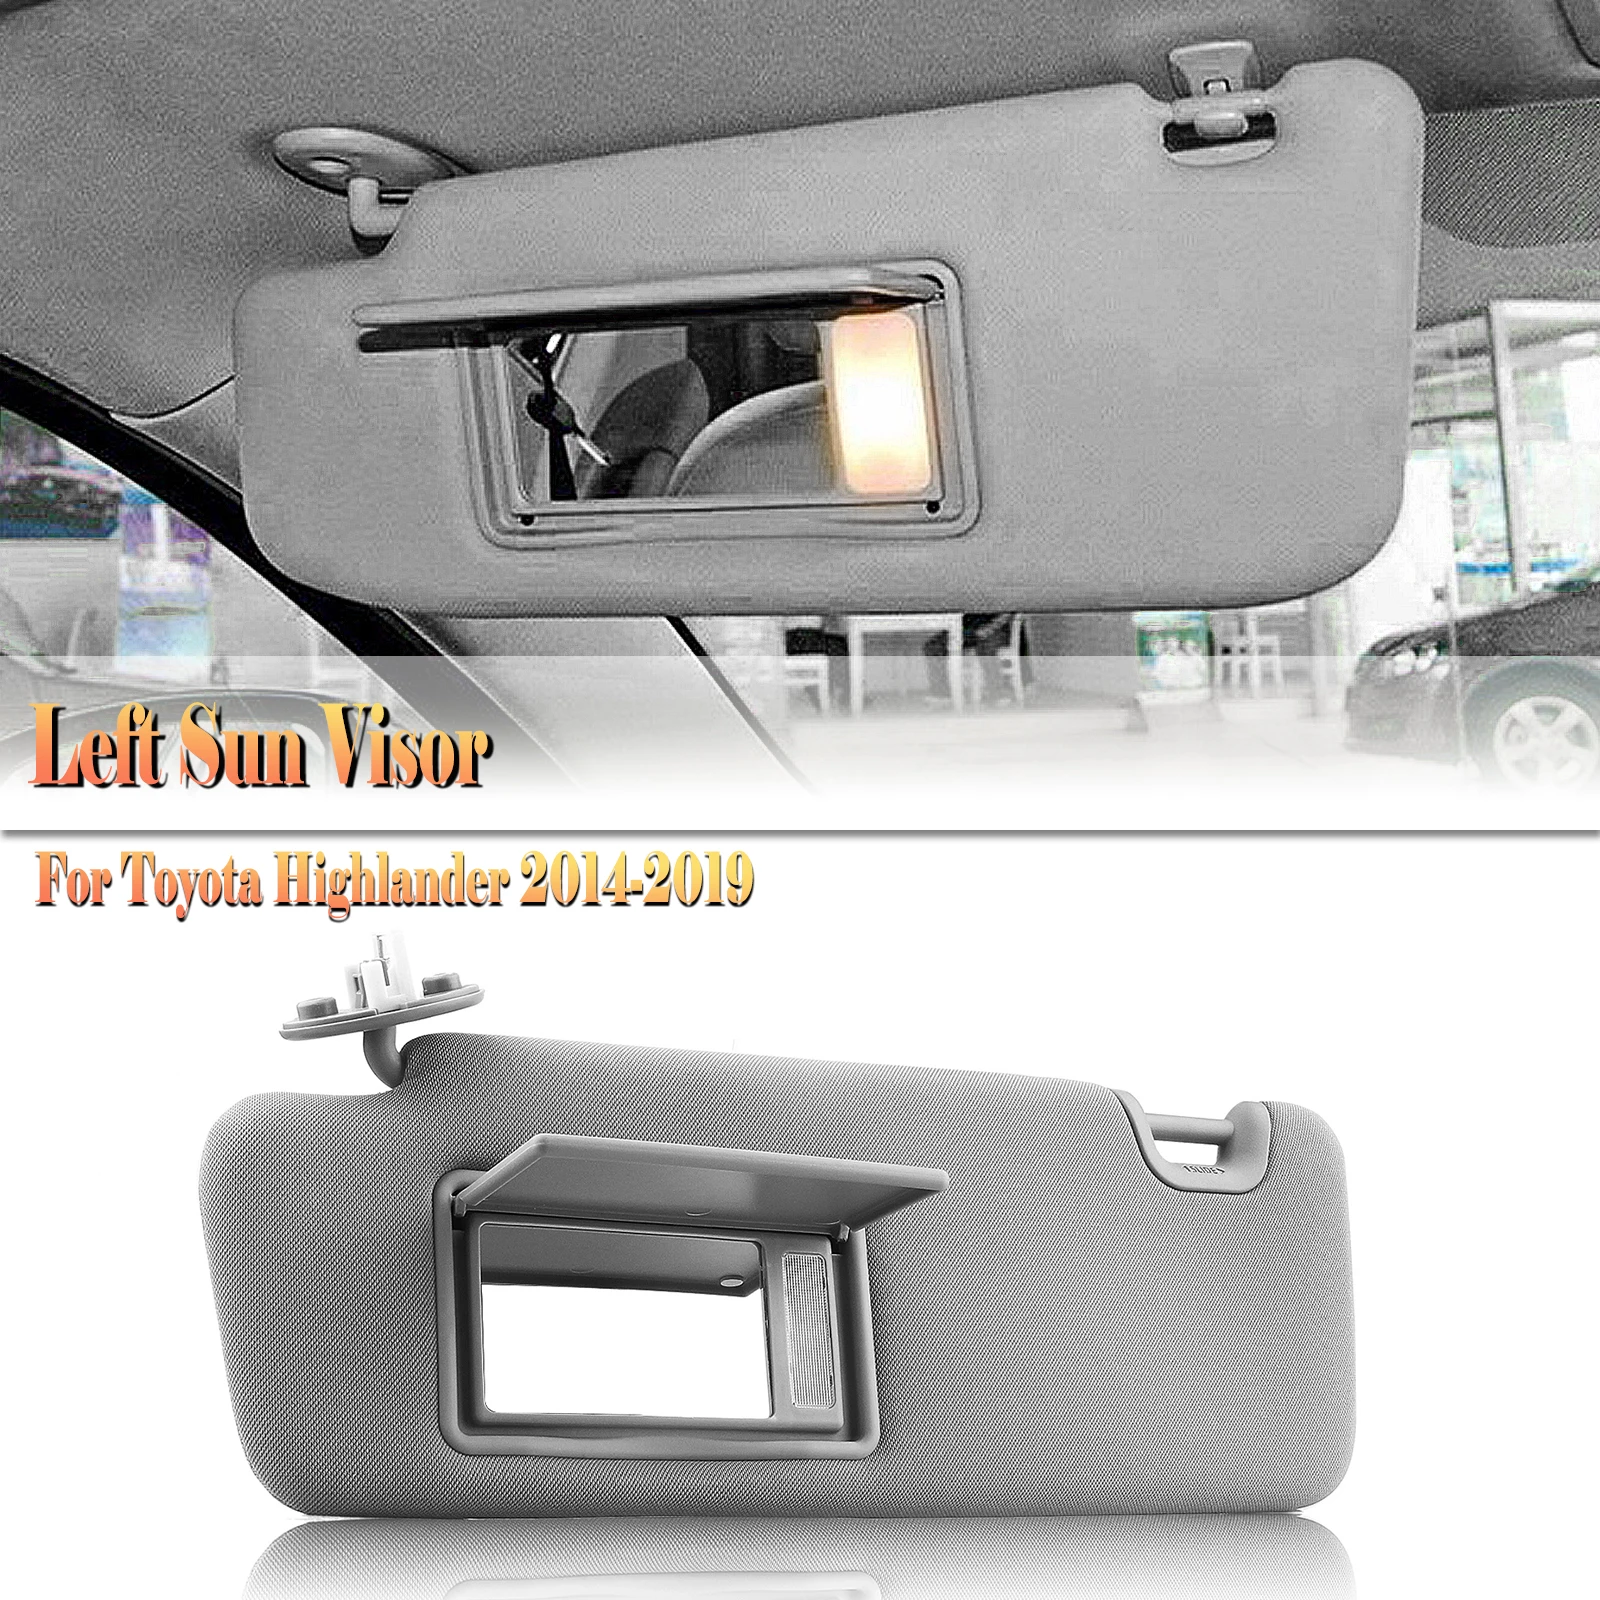 

Для Toyota Highlander 2014-2019 74320-0E074-A0, передний левый задний фонарь для водителя, цвет серый/бежевый, солнцезащитный козырек, задняя крышка